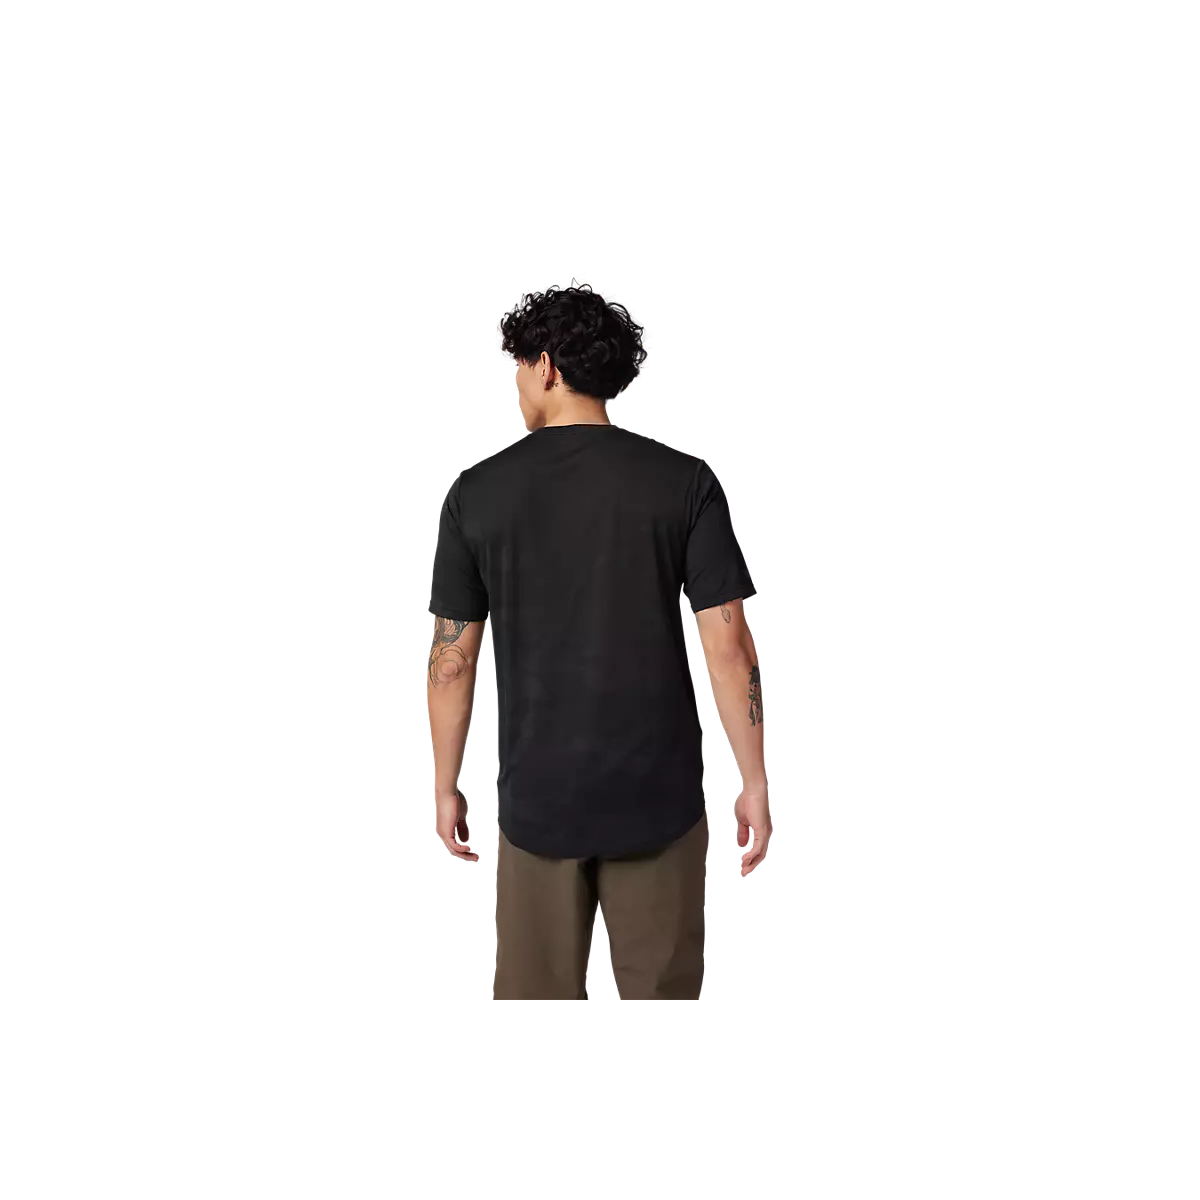 Camiseta técnica de manga corta Fox Ranfger Tru Dri disponible en color negro y varias tallas.